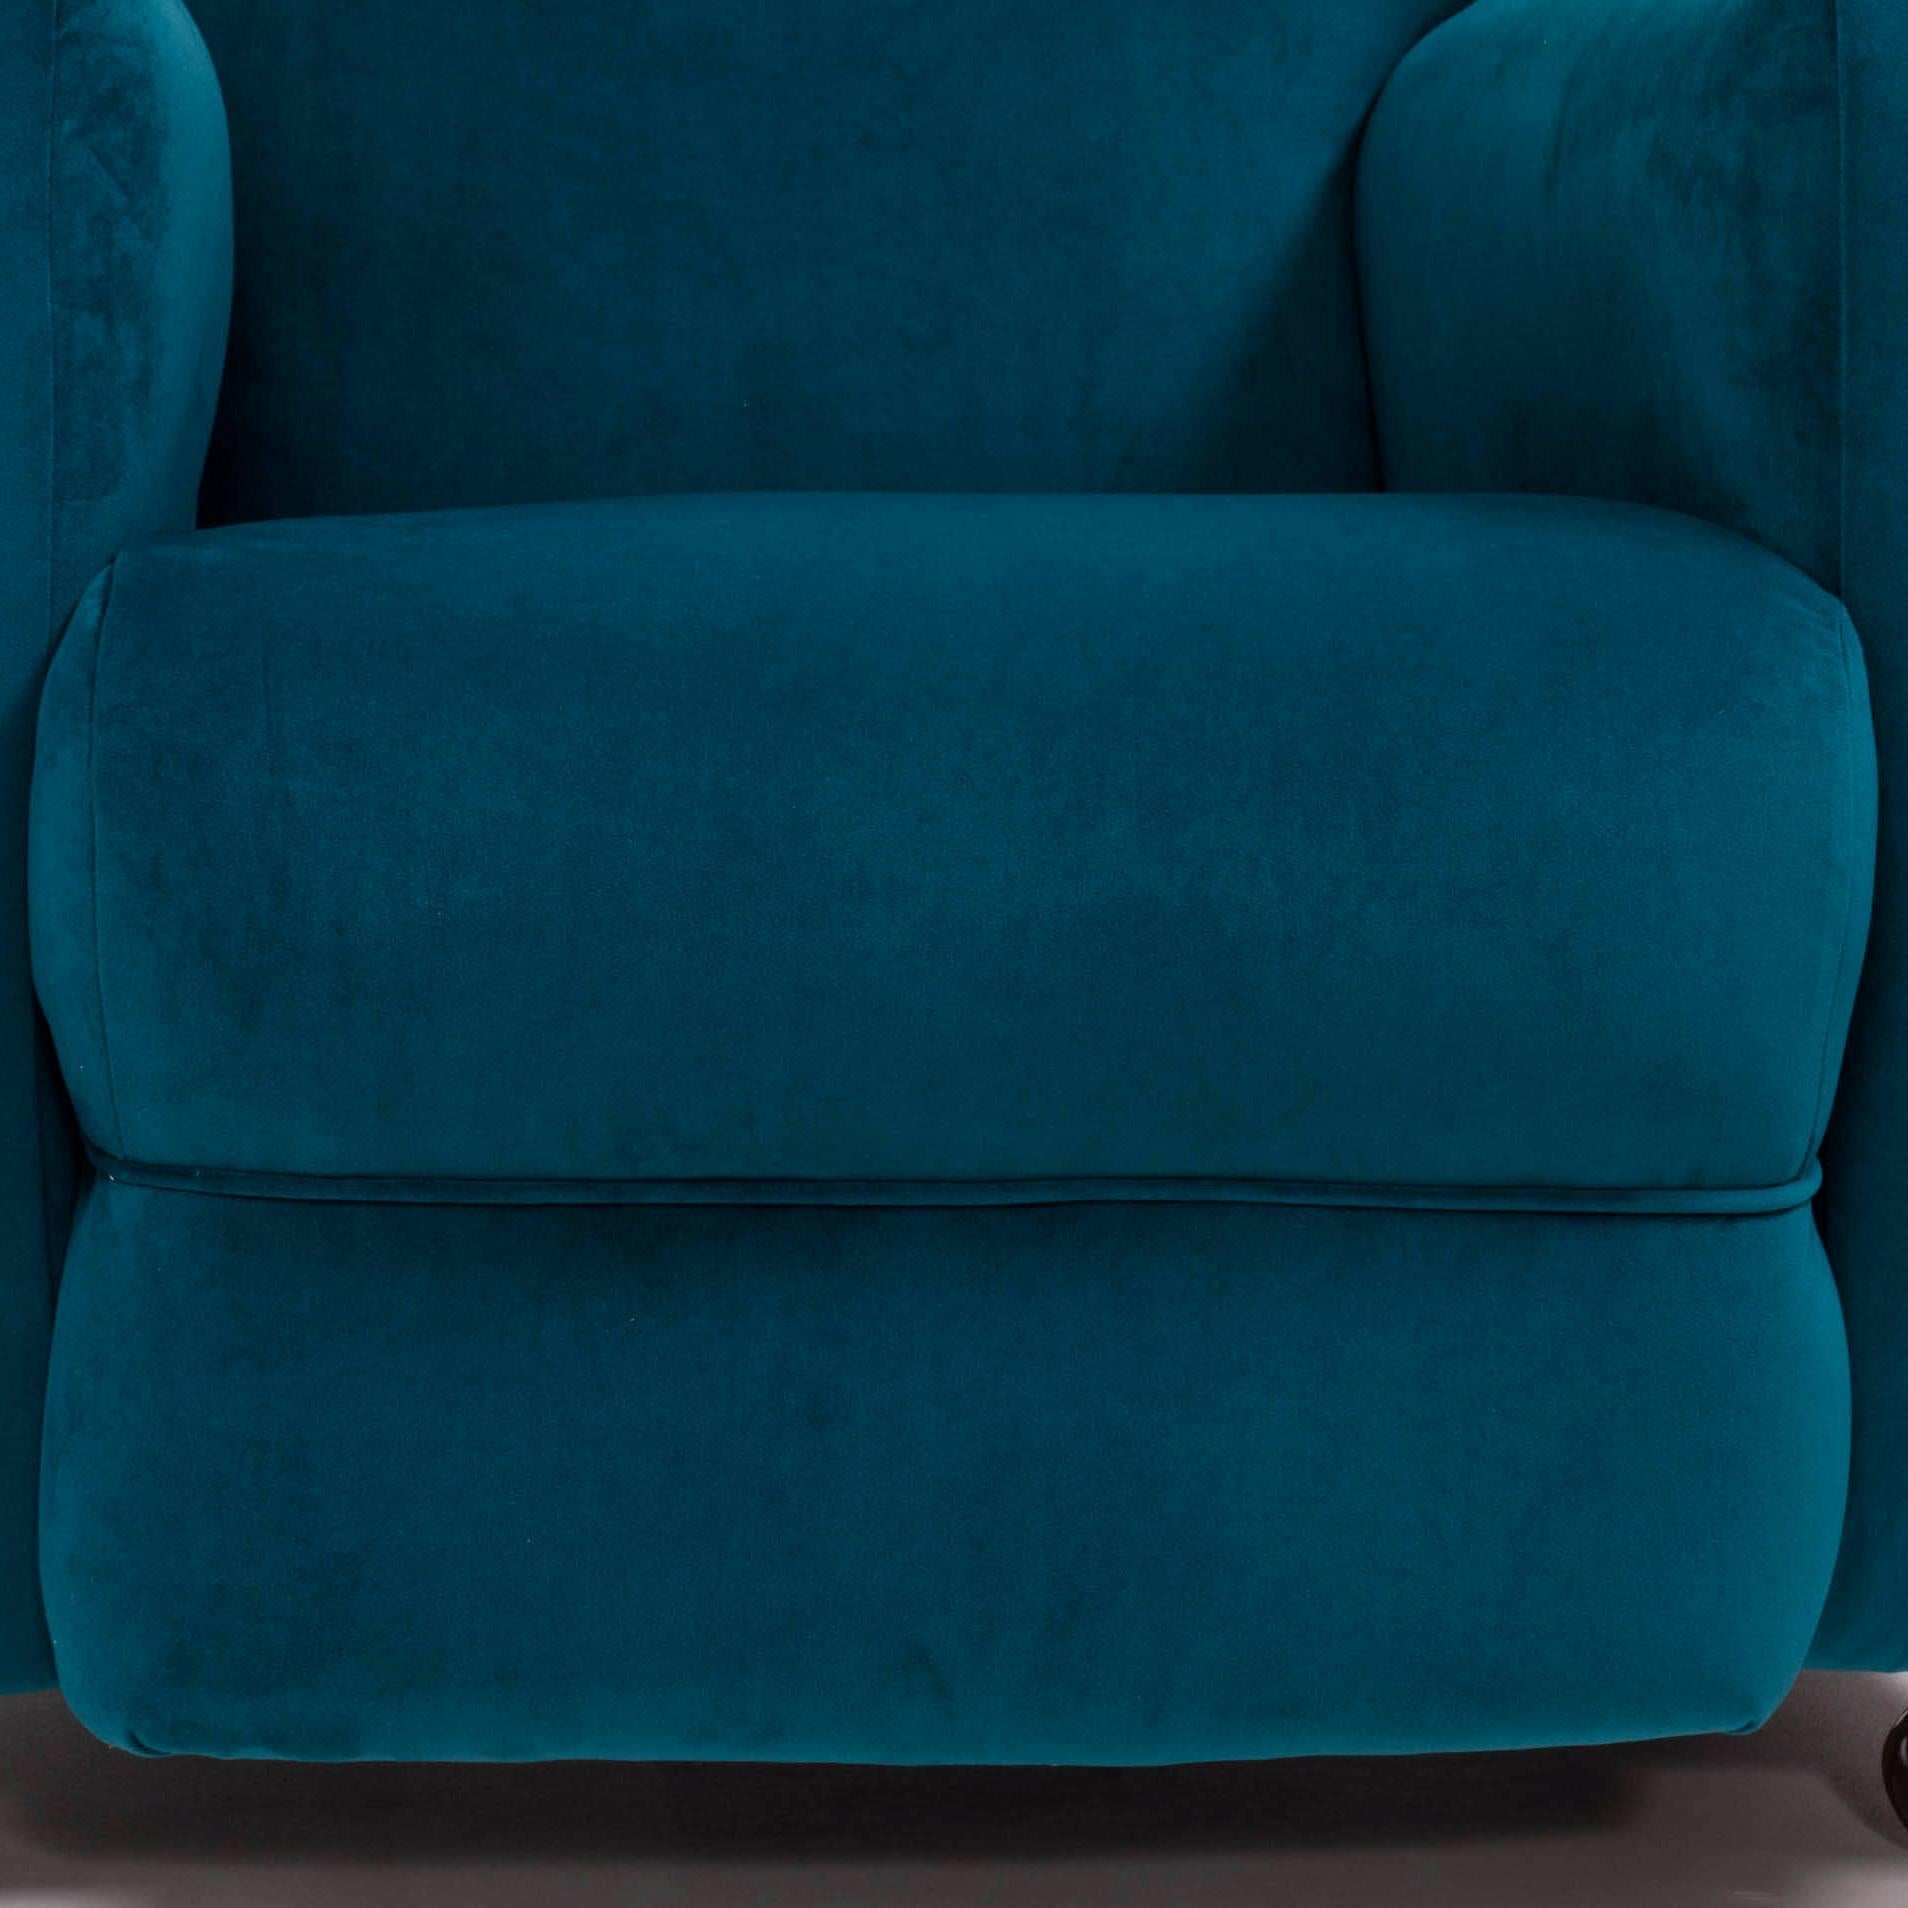 1930s Art Deco Curved Blue Teal Velvet Armchair 1